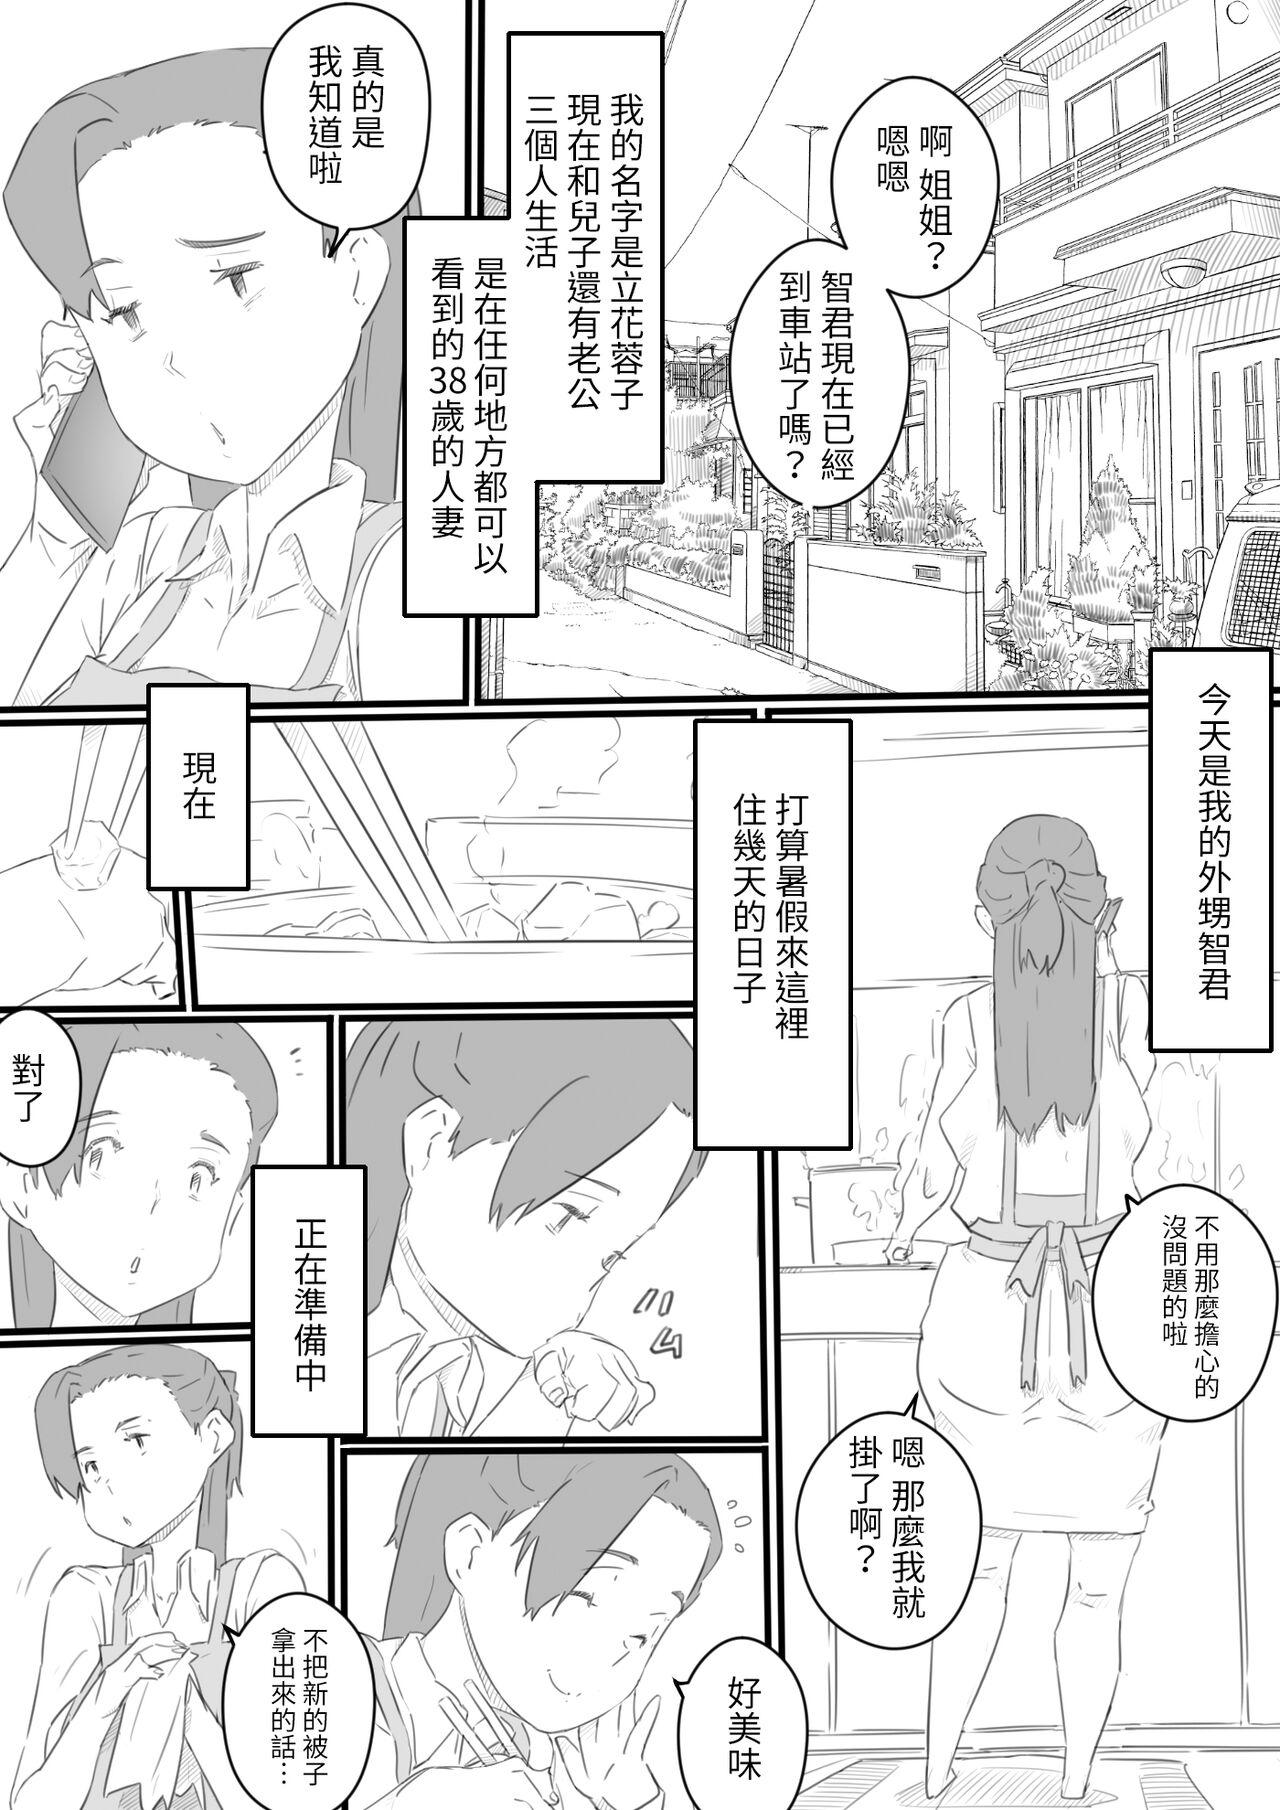 Spooning hi ki komo ri no oi xtu ko to三 nin no hitozuma‐ hito natu no omo i de…‐ Nuru Massage - Page 2